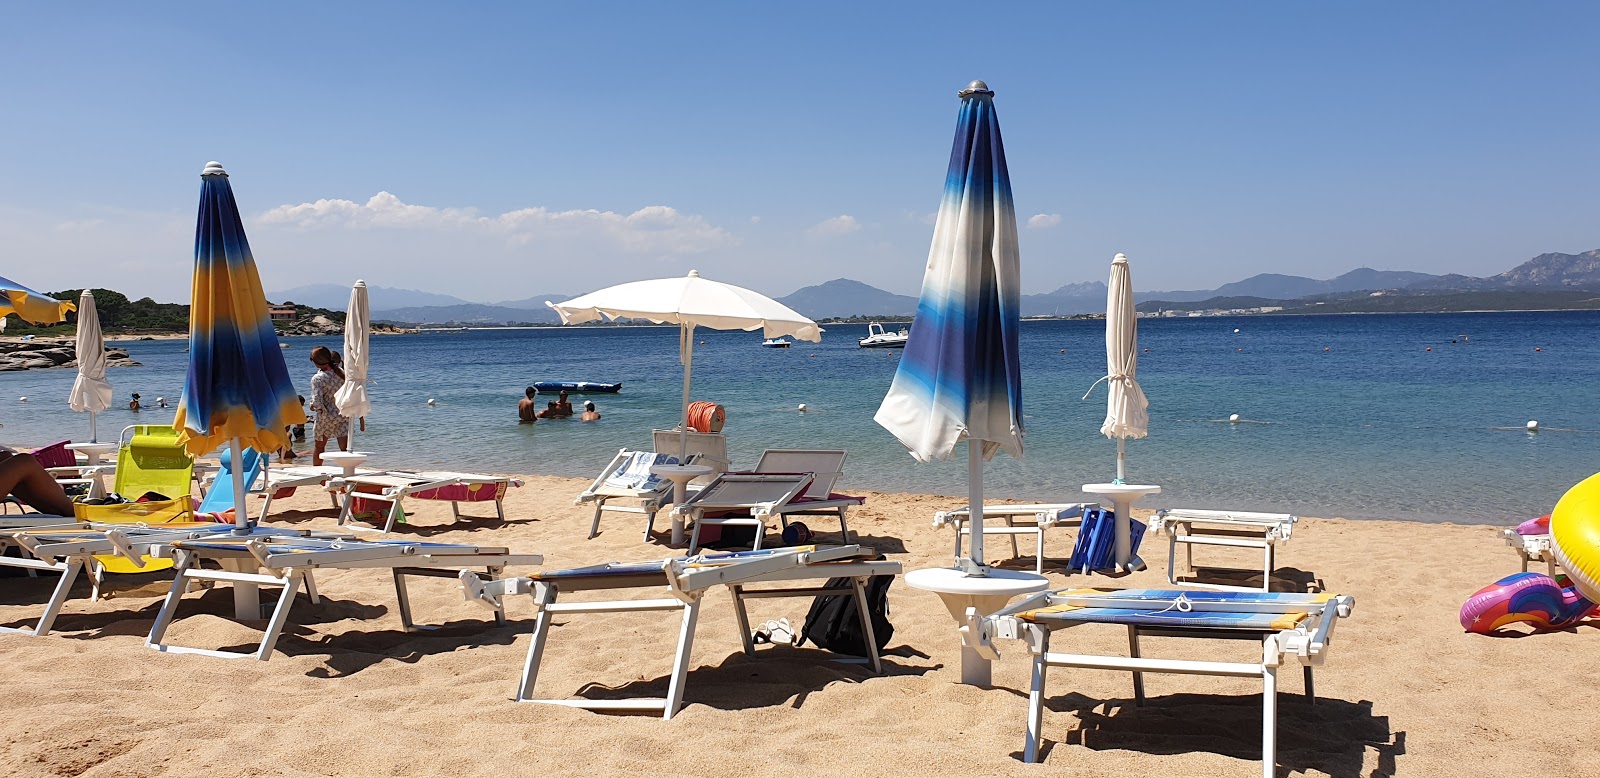 Foto van Spiaggia Su Sarrale met turquoise puur water oppervlakte